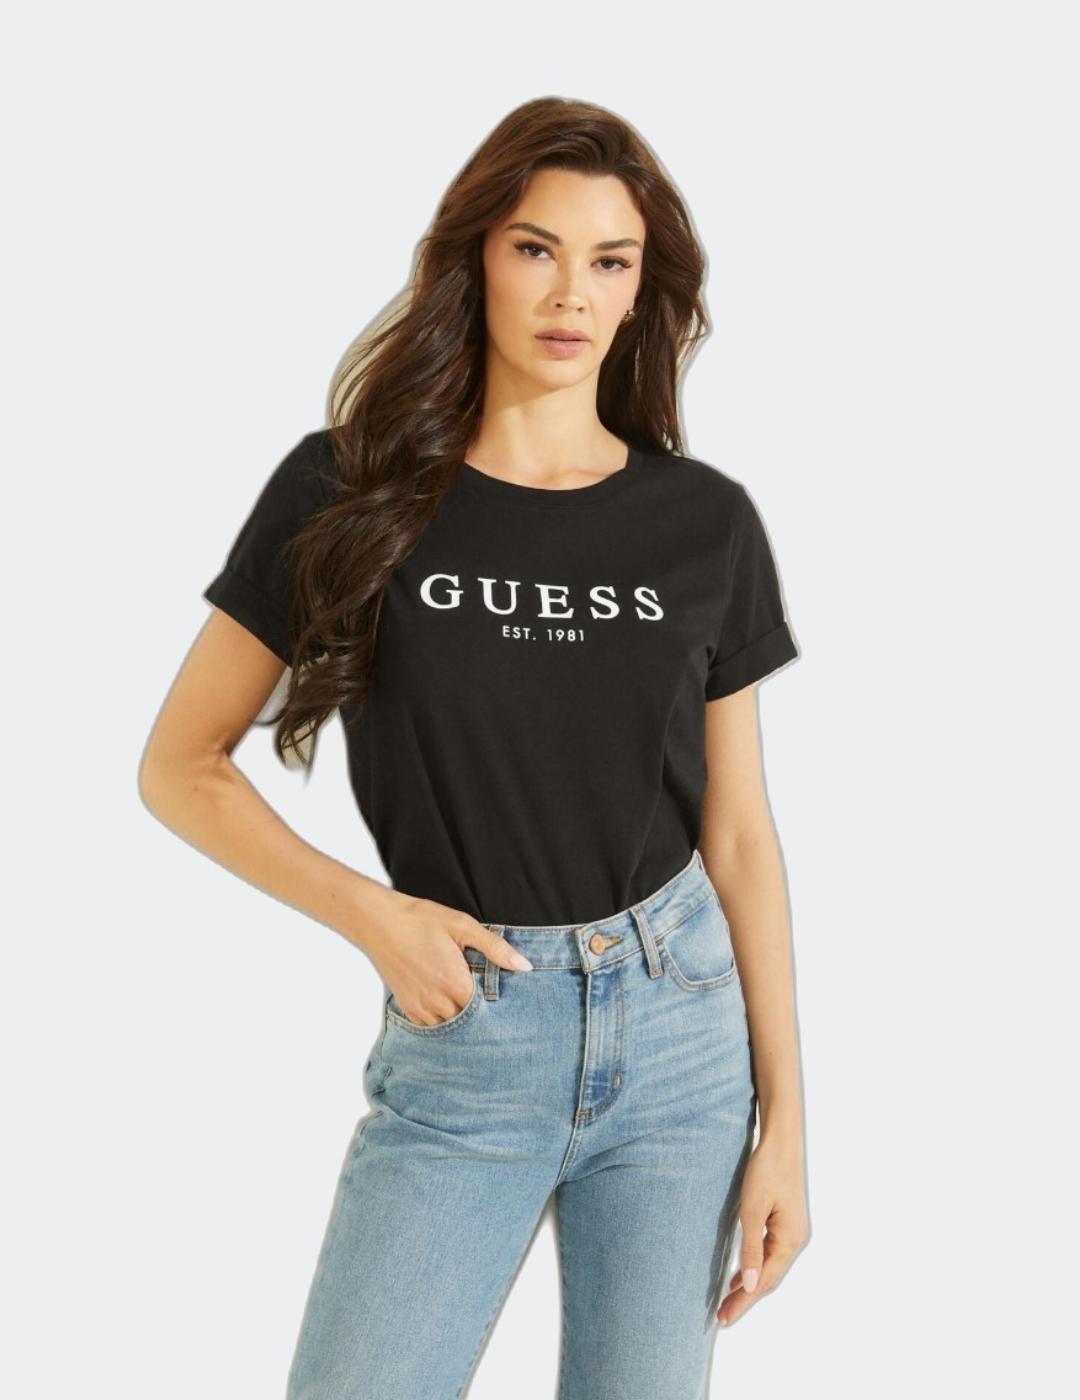 Camiseta Guess 1981 para mujer